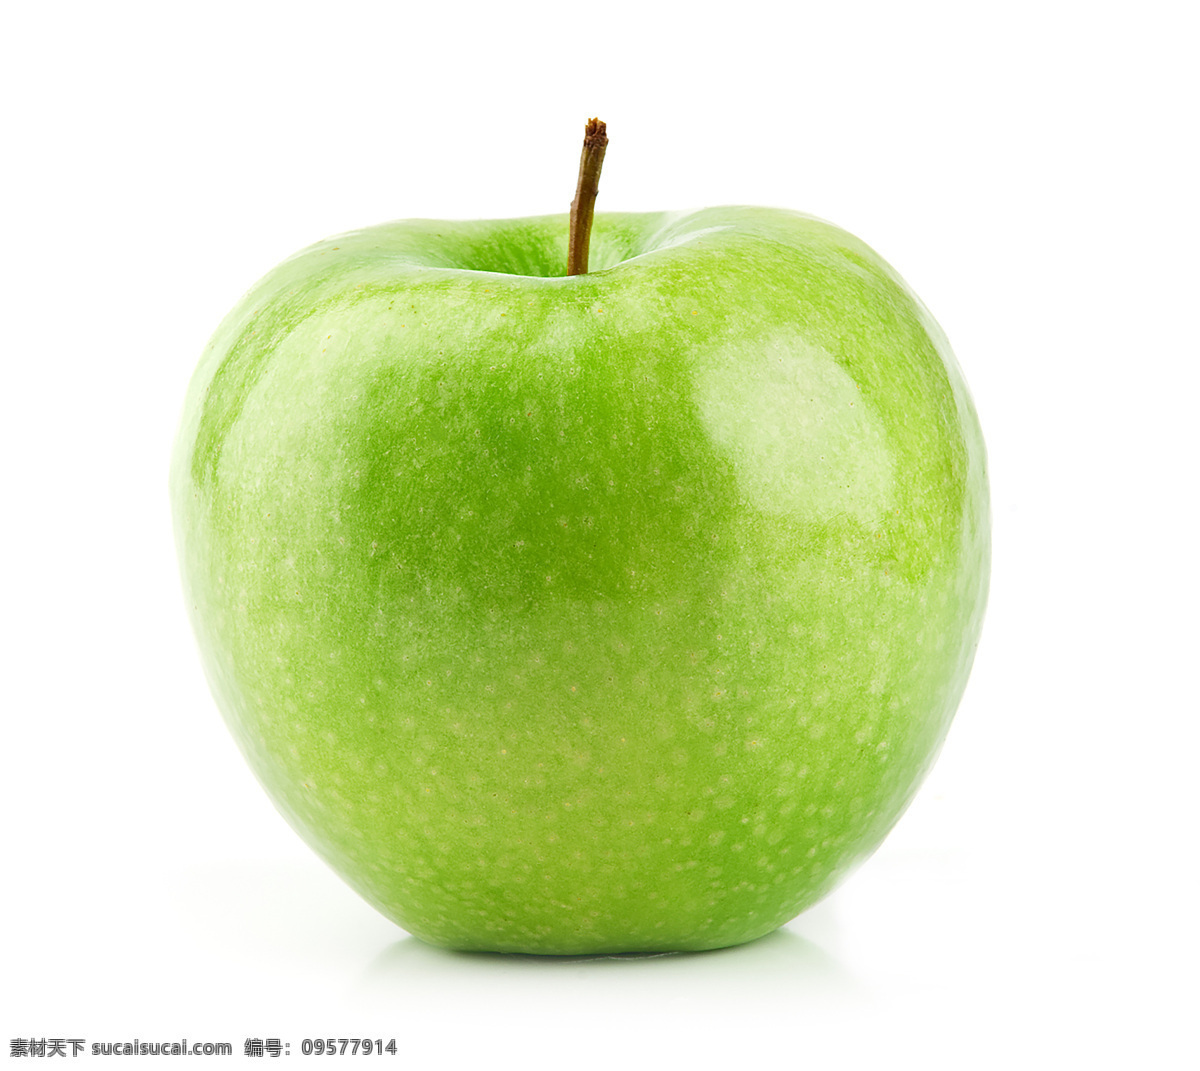 绿苹果 苹果 白色背景 绿色 健康 食物 维生素 自然 叶子 食品 美味 素食 有机食品 生食 甜食 植物 水果 生物世界